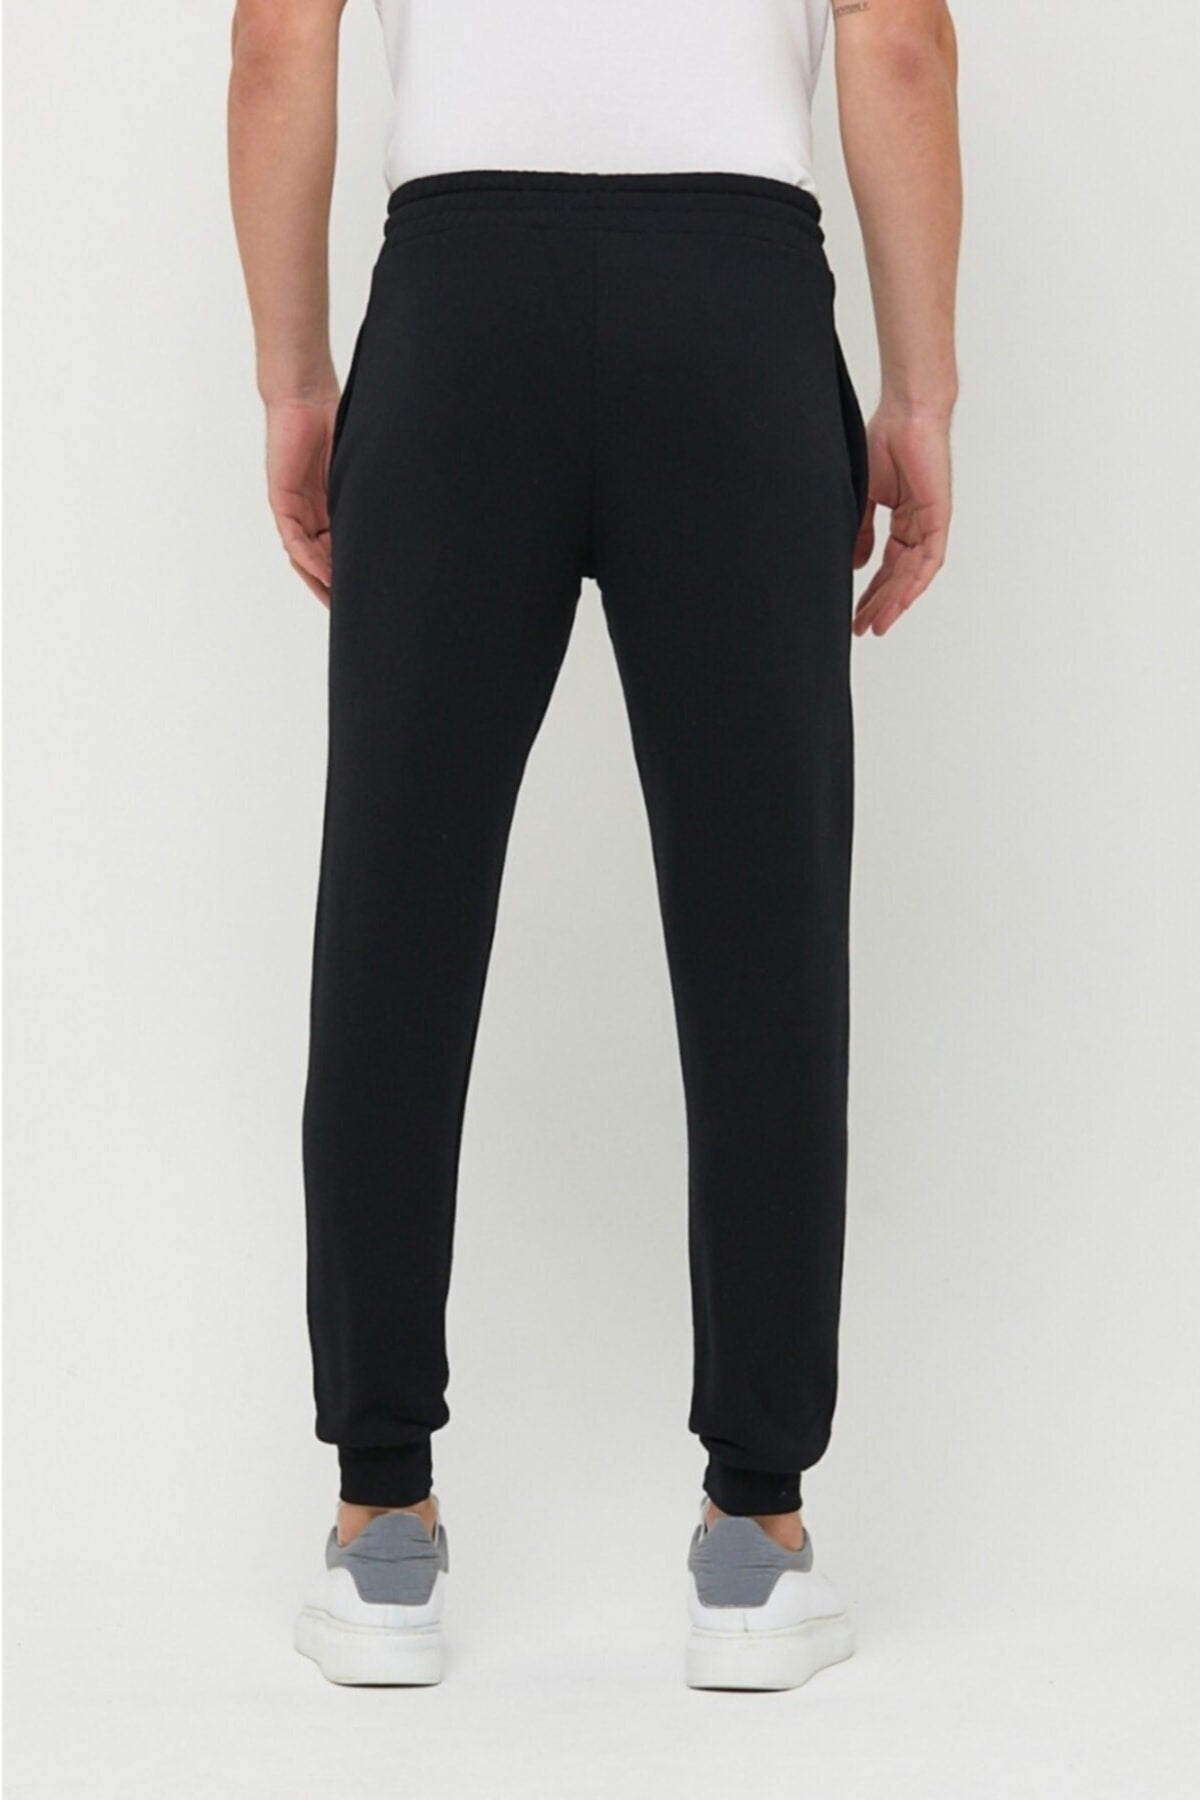 Men's Black Slim Fit Jogger Sweatpants Justu Printed